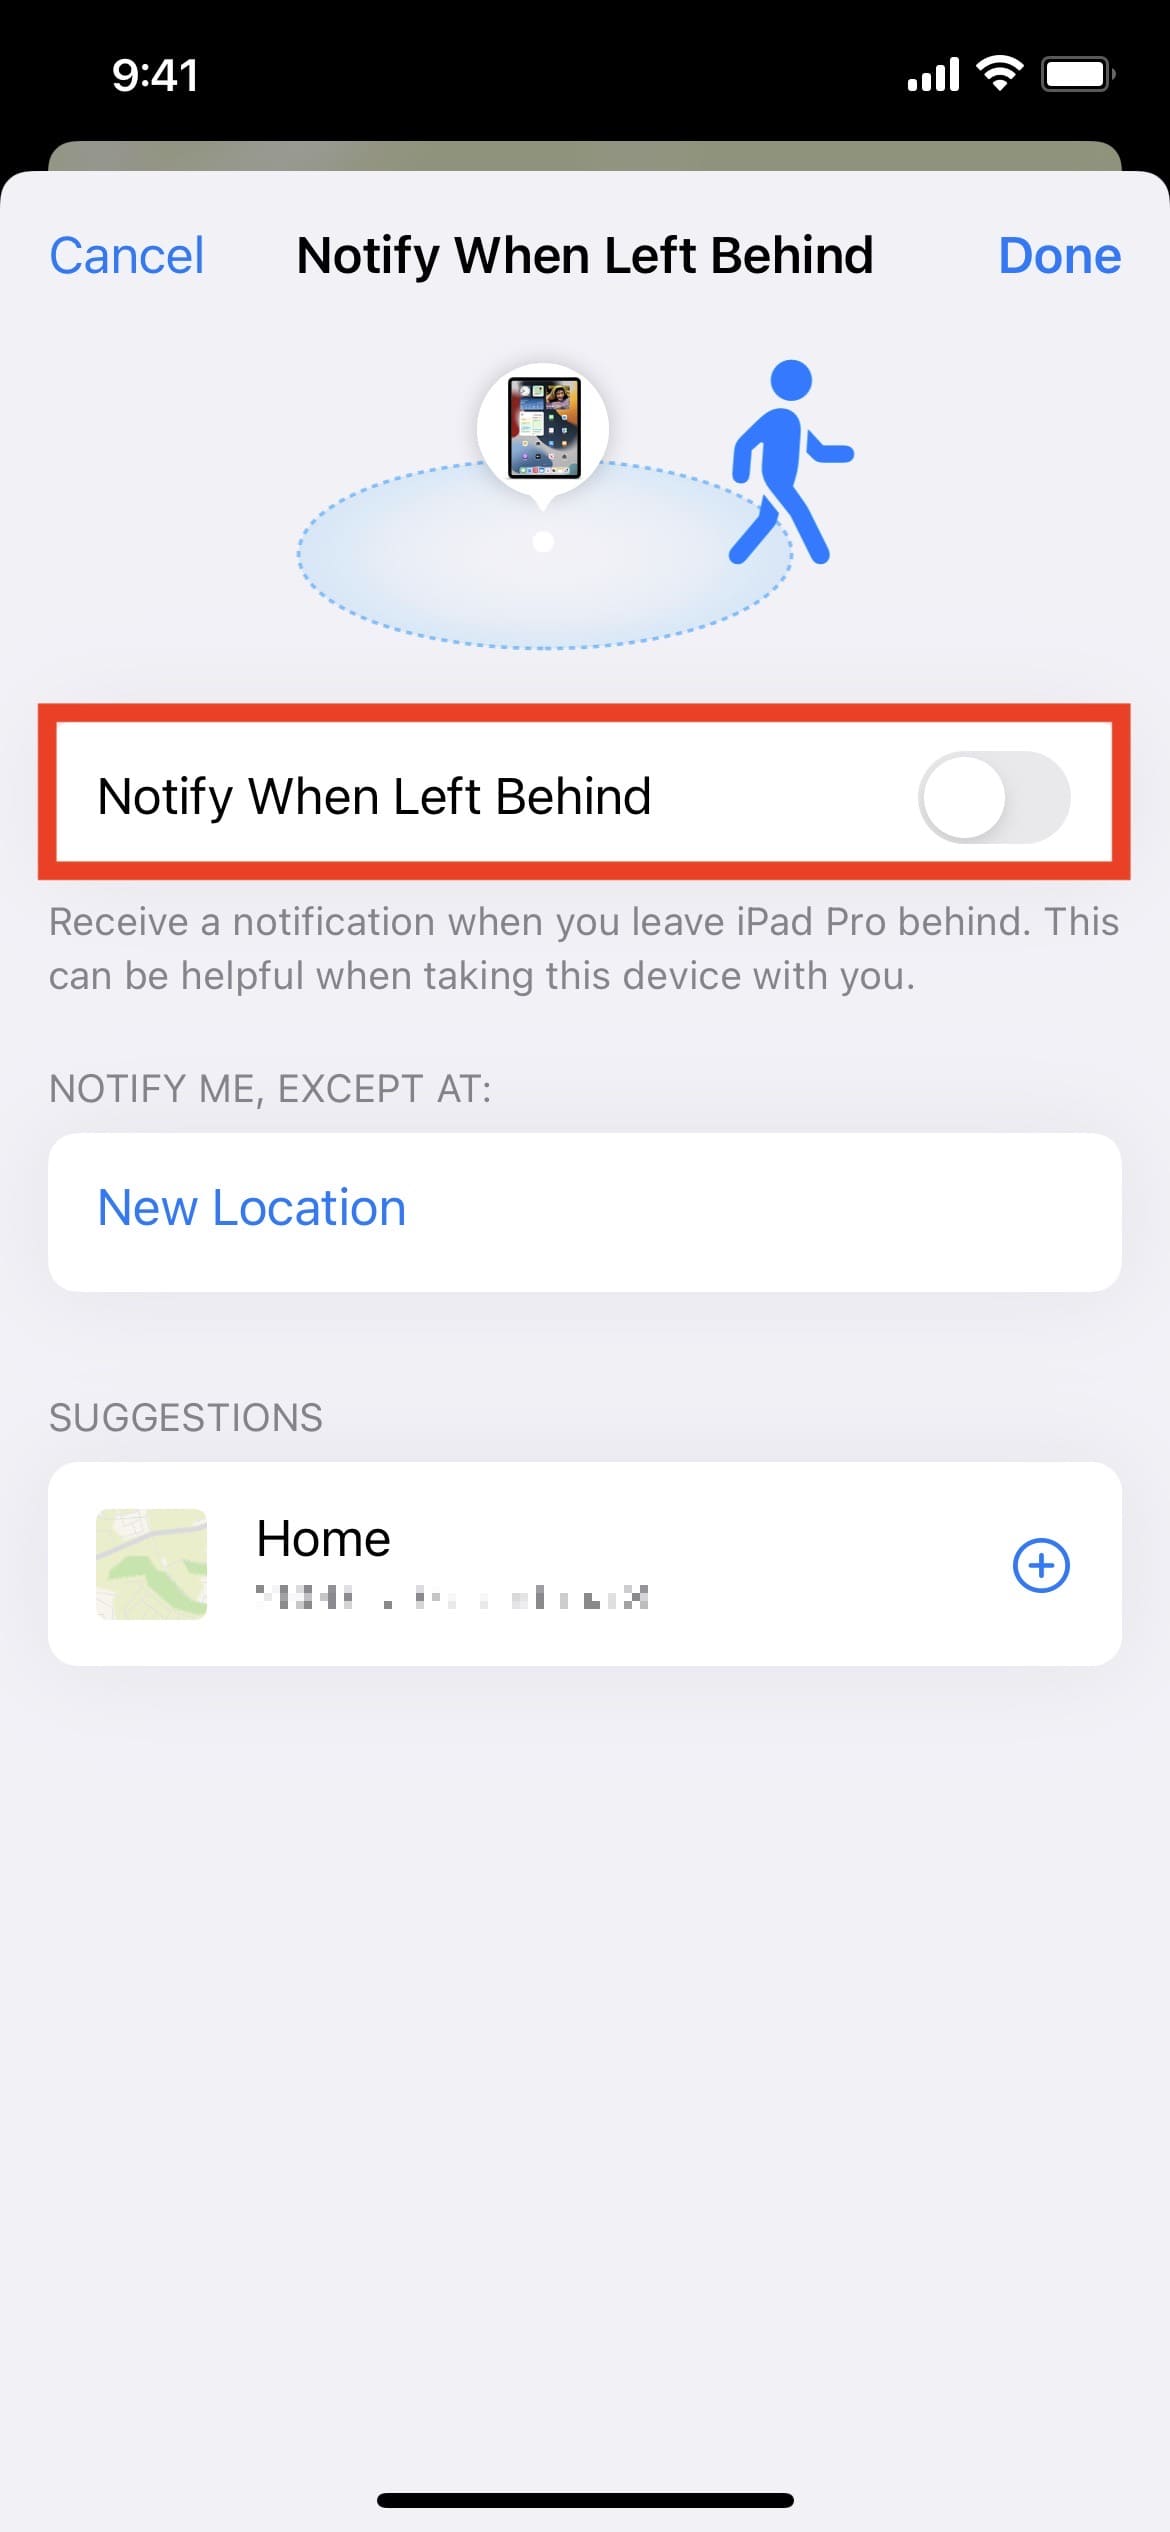 Desactive Notificar cuando se quede atrás en Buscar mi aplicación en iPhone en iOS 15